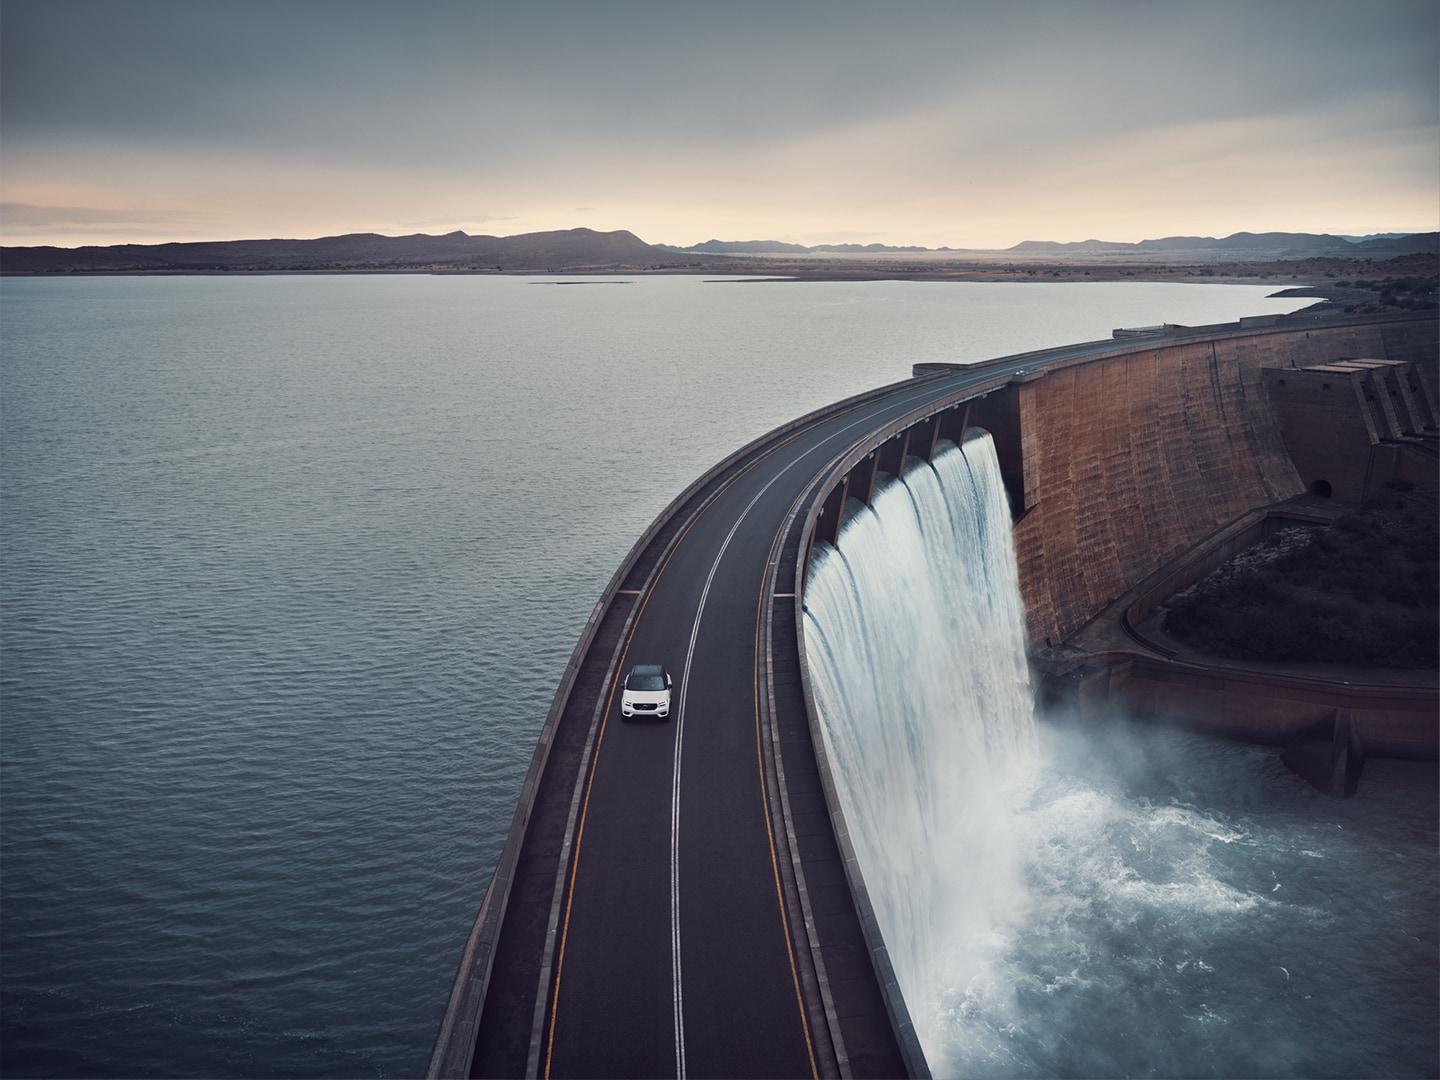 Un Volvo SUV circulando por una carretera que atraviesa una presa que contiene un embalse.